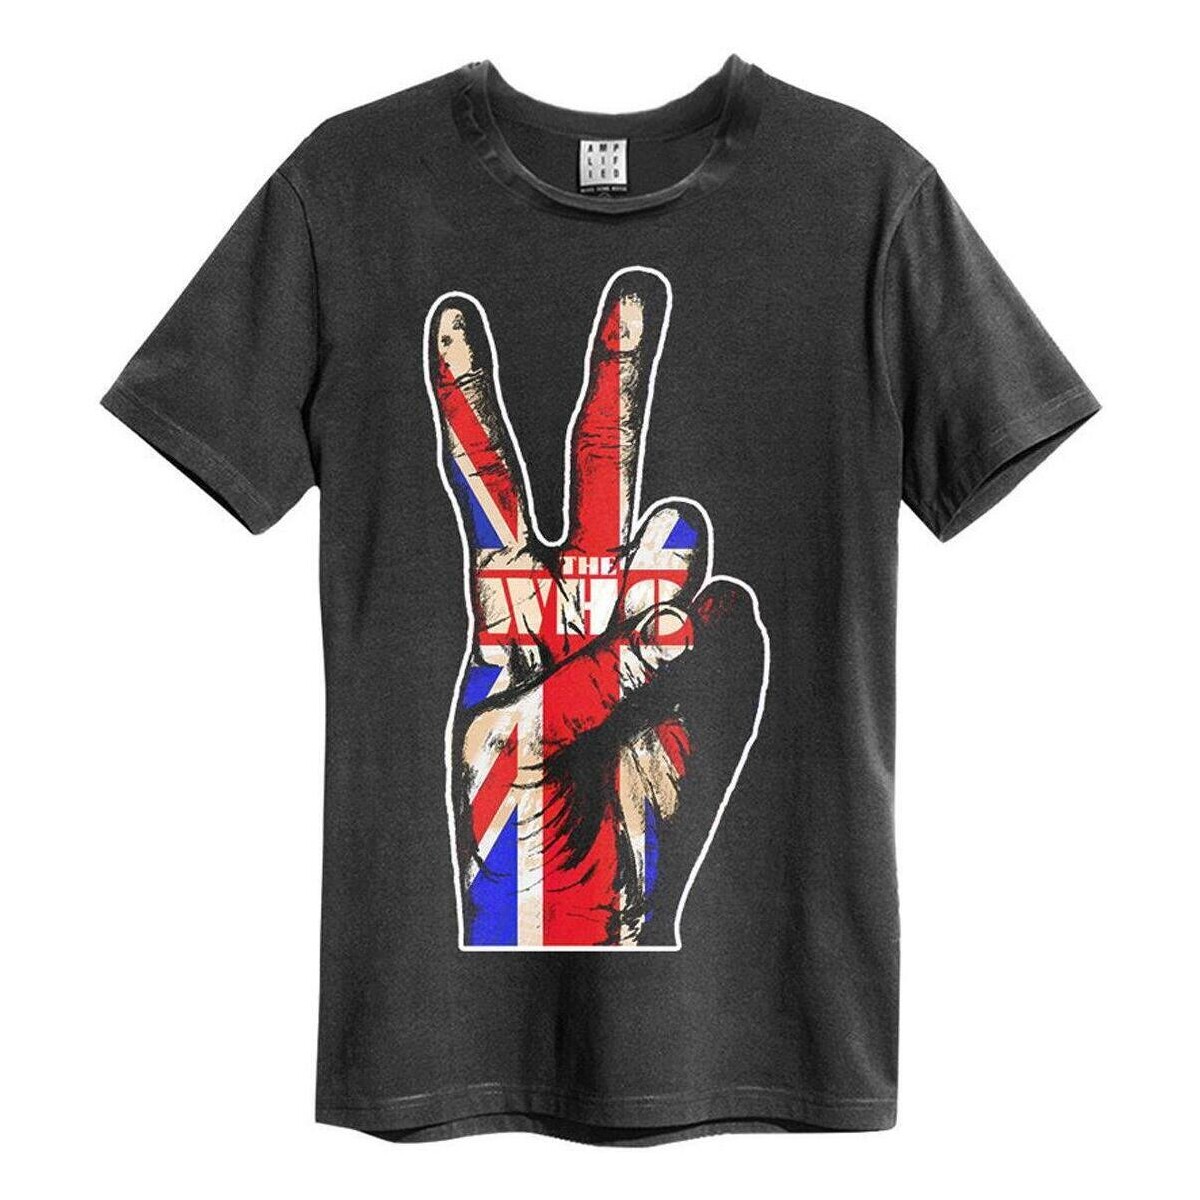 Vêtements T-shirts manches longues Amplified Union Jack Hand Multicolore